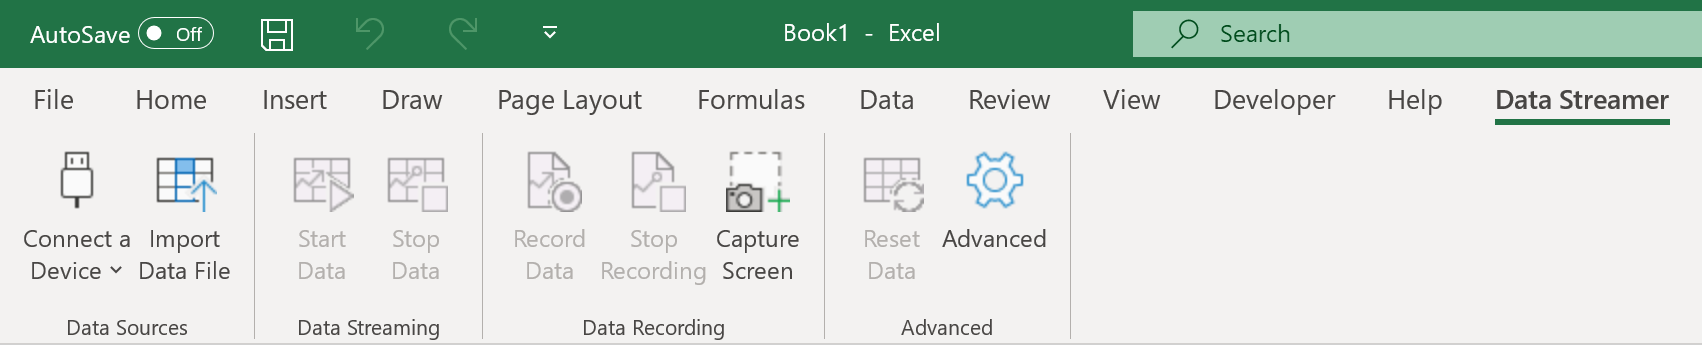 Streamer de Dados da Microsoft para a faixa de opções do Excel.